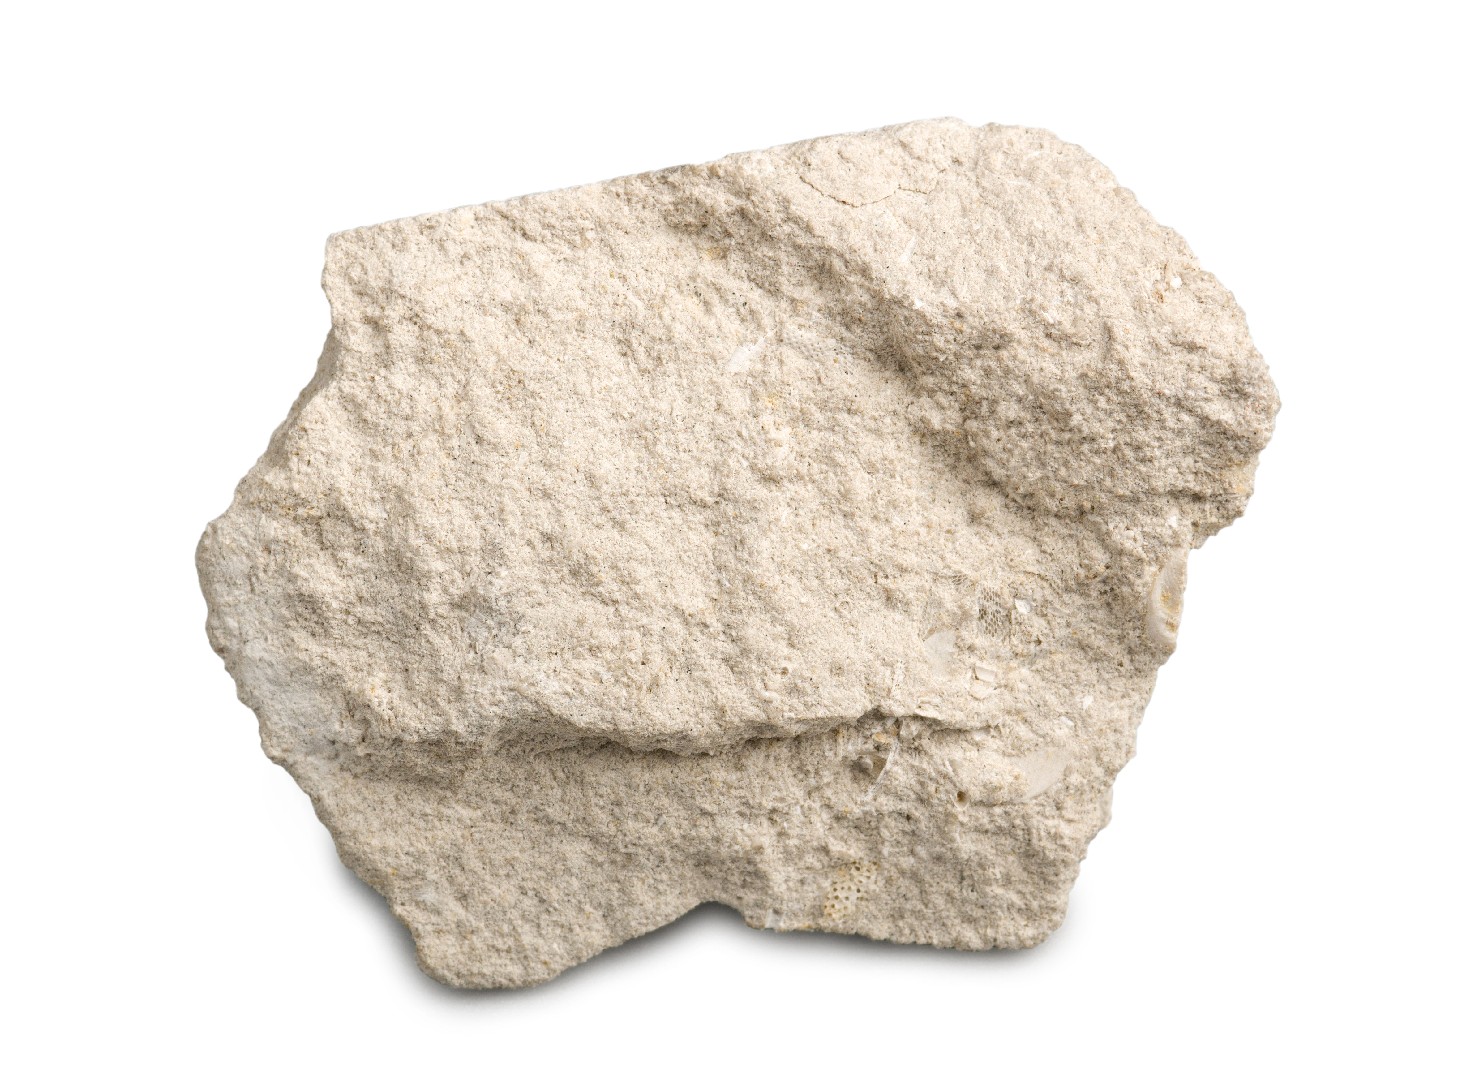 Calcaire (Limestone) - Rock Identifier